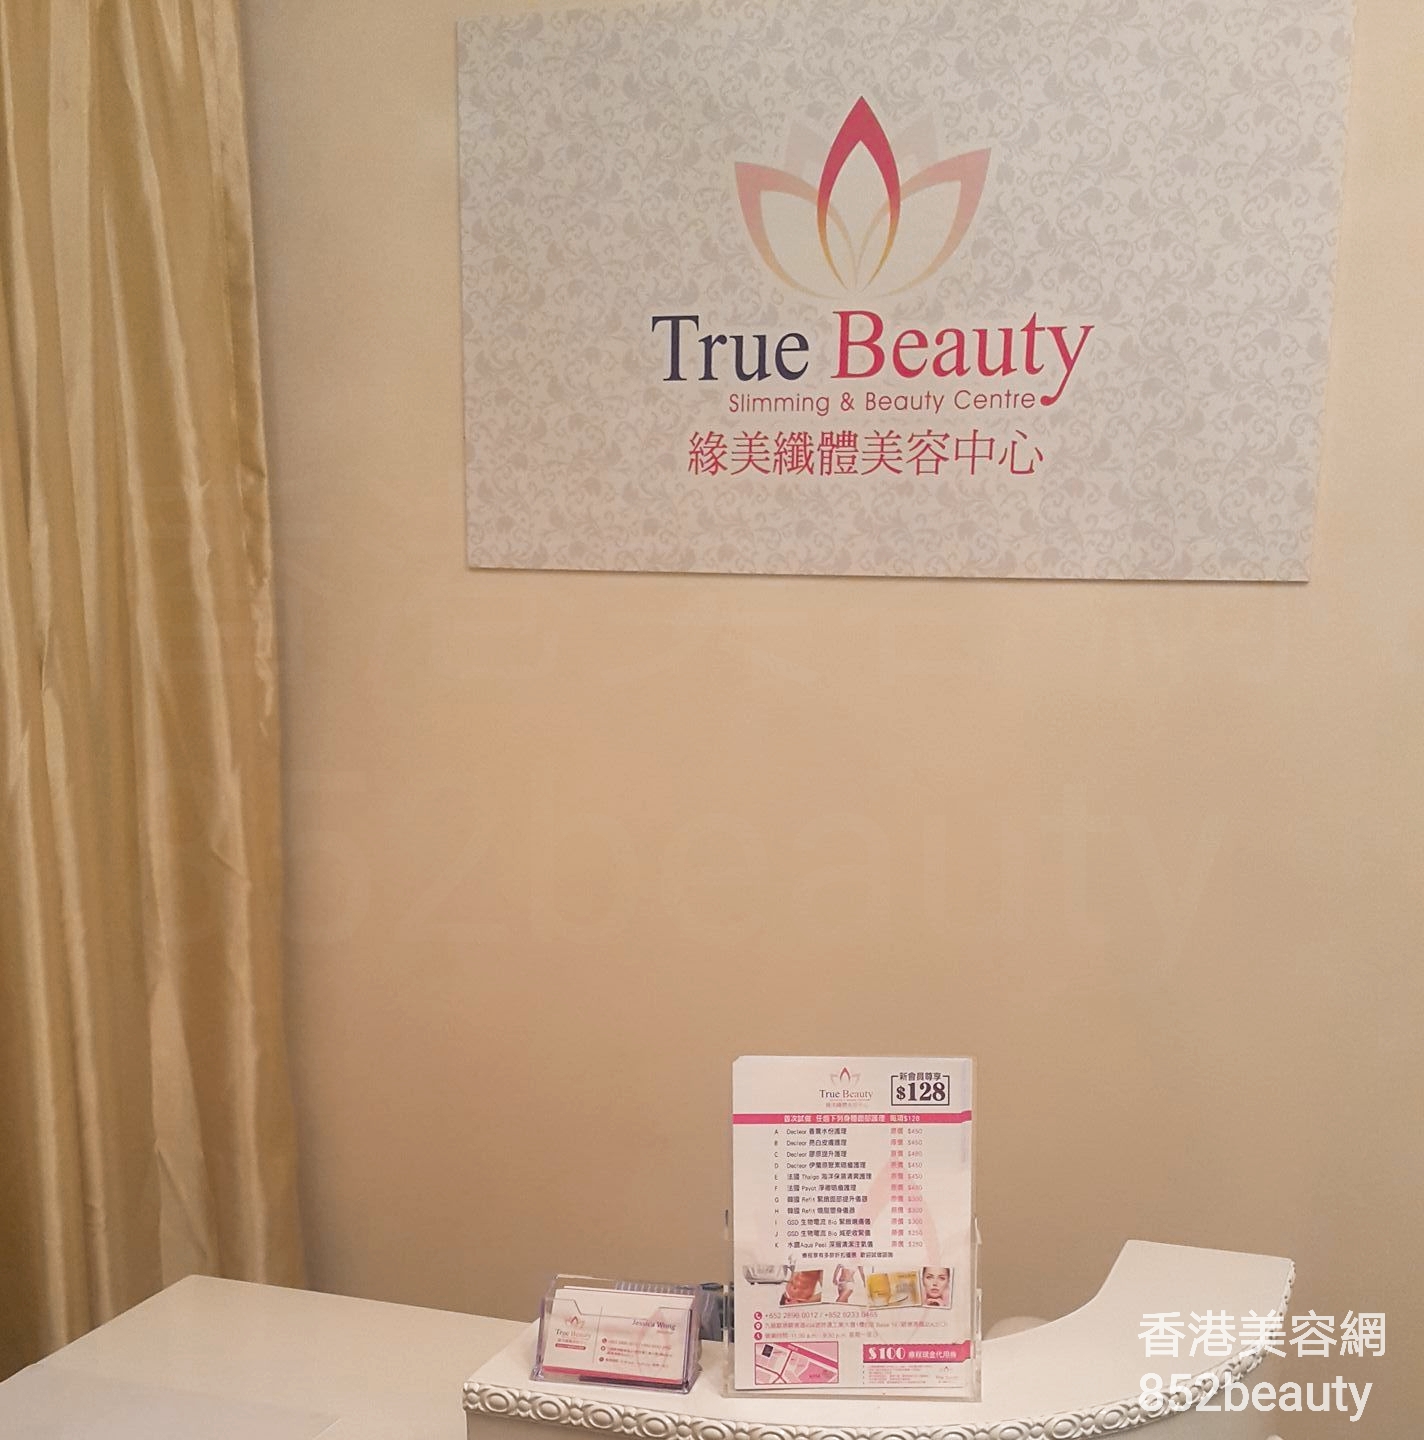 香港美容網 Hong Kong Beauty Salon 美容院 / 美容師: True Beauty 緣美纖體美容中心